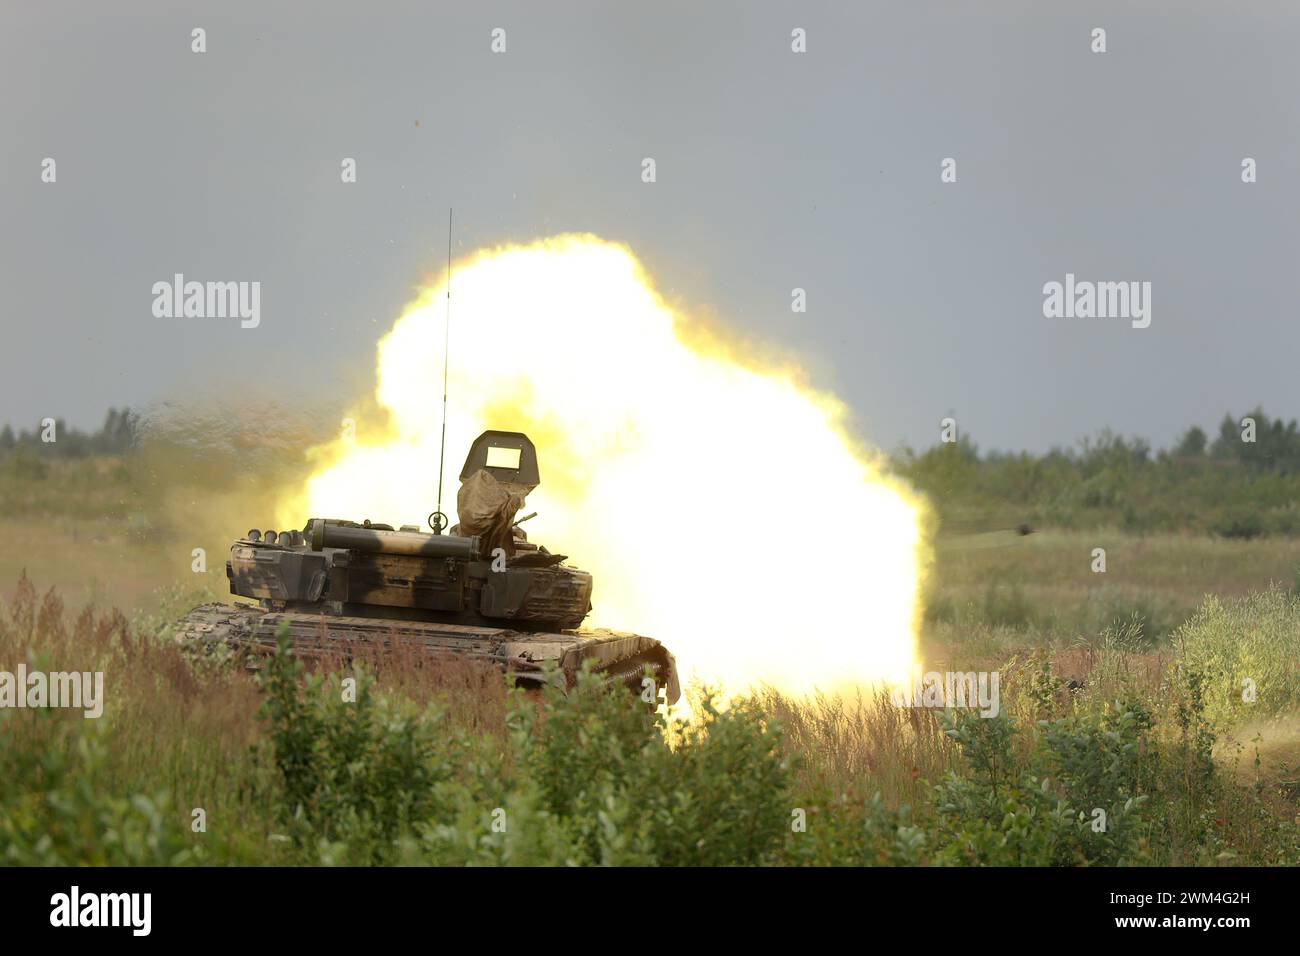 Feuer und Rauch aus einem Panzerschuss während des Trainings auf dem Trainingsgelände Stockfoto